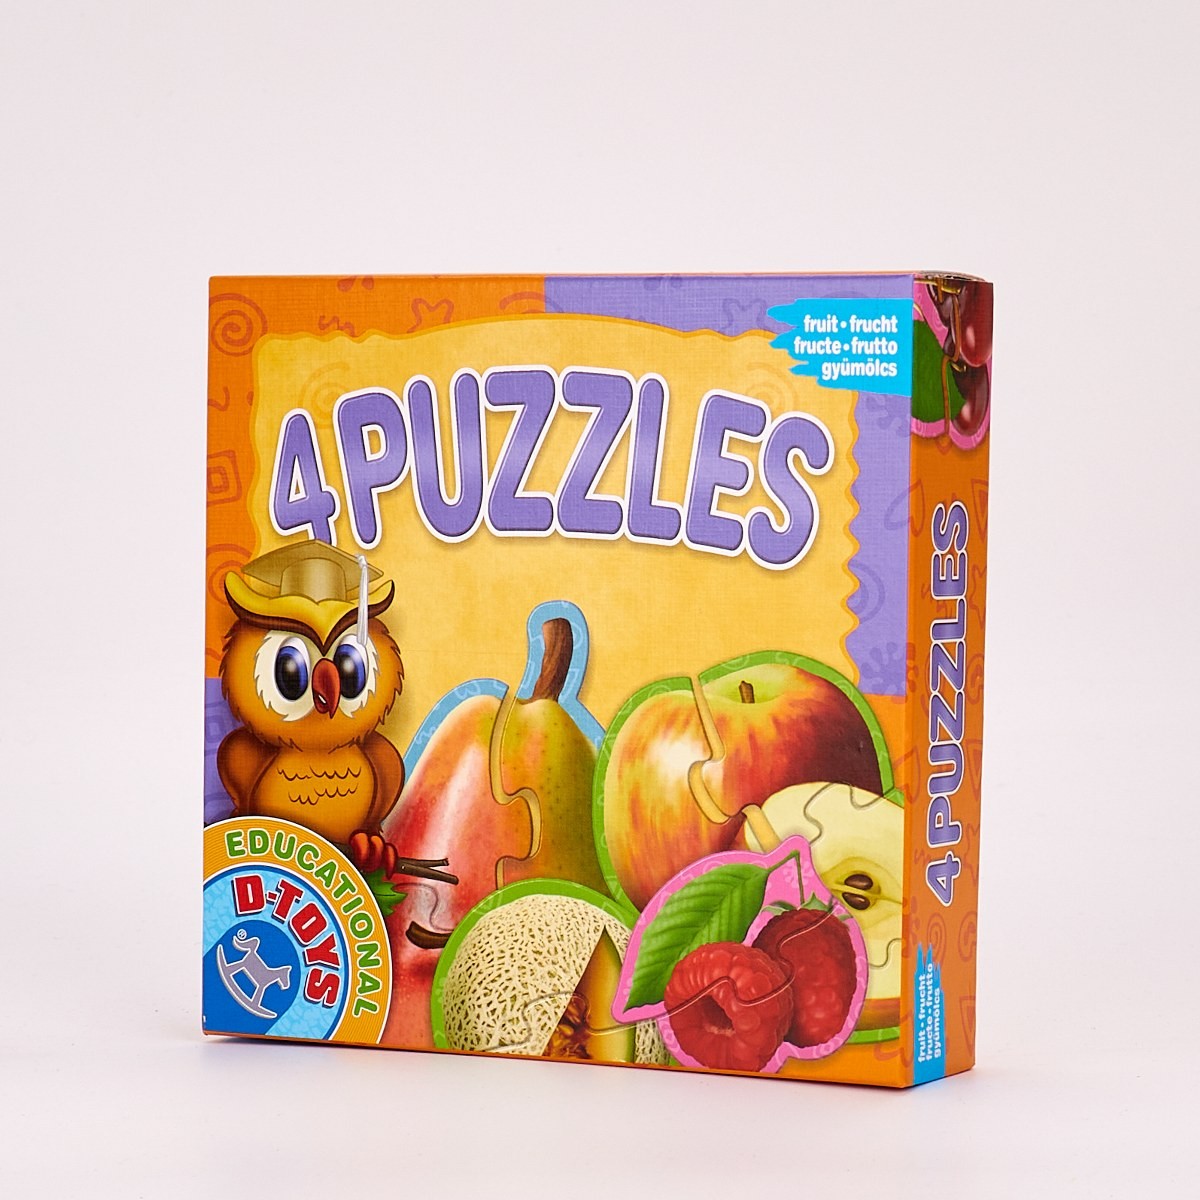 4 Puzzles Cu Fructe